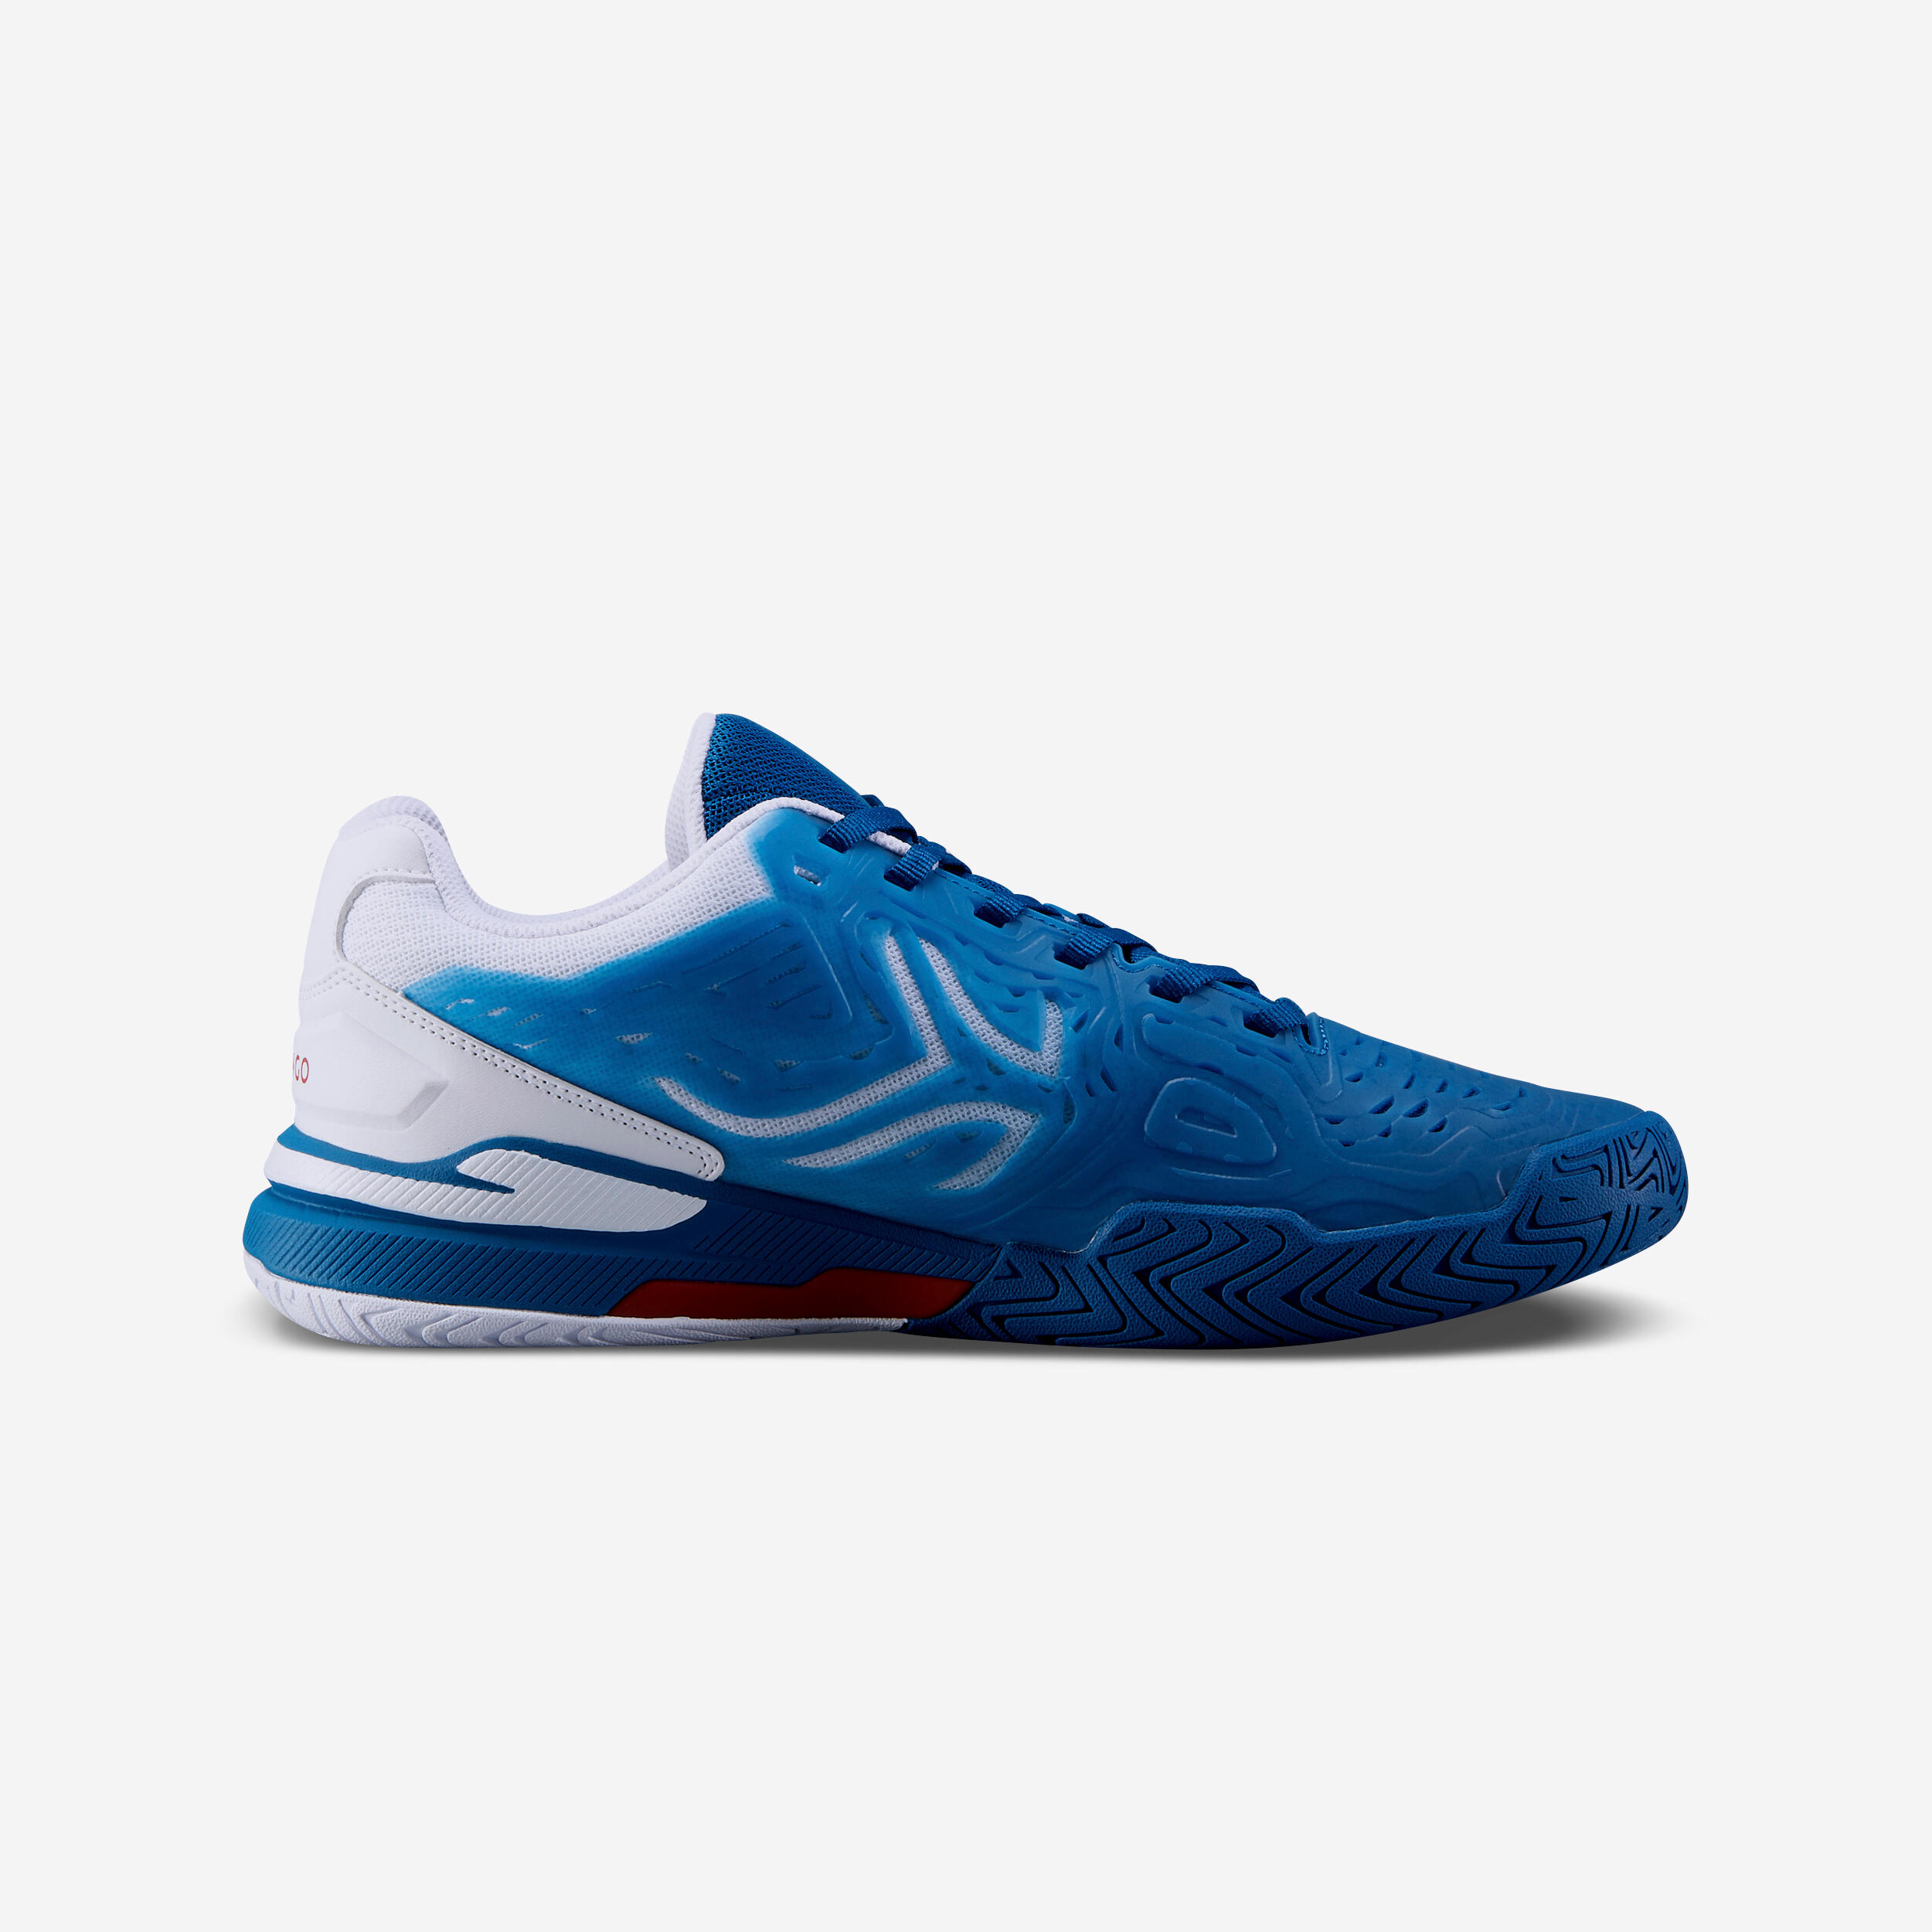 Chaussures de tennis homme - TS 560 bleu - ARTENGO